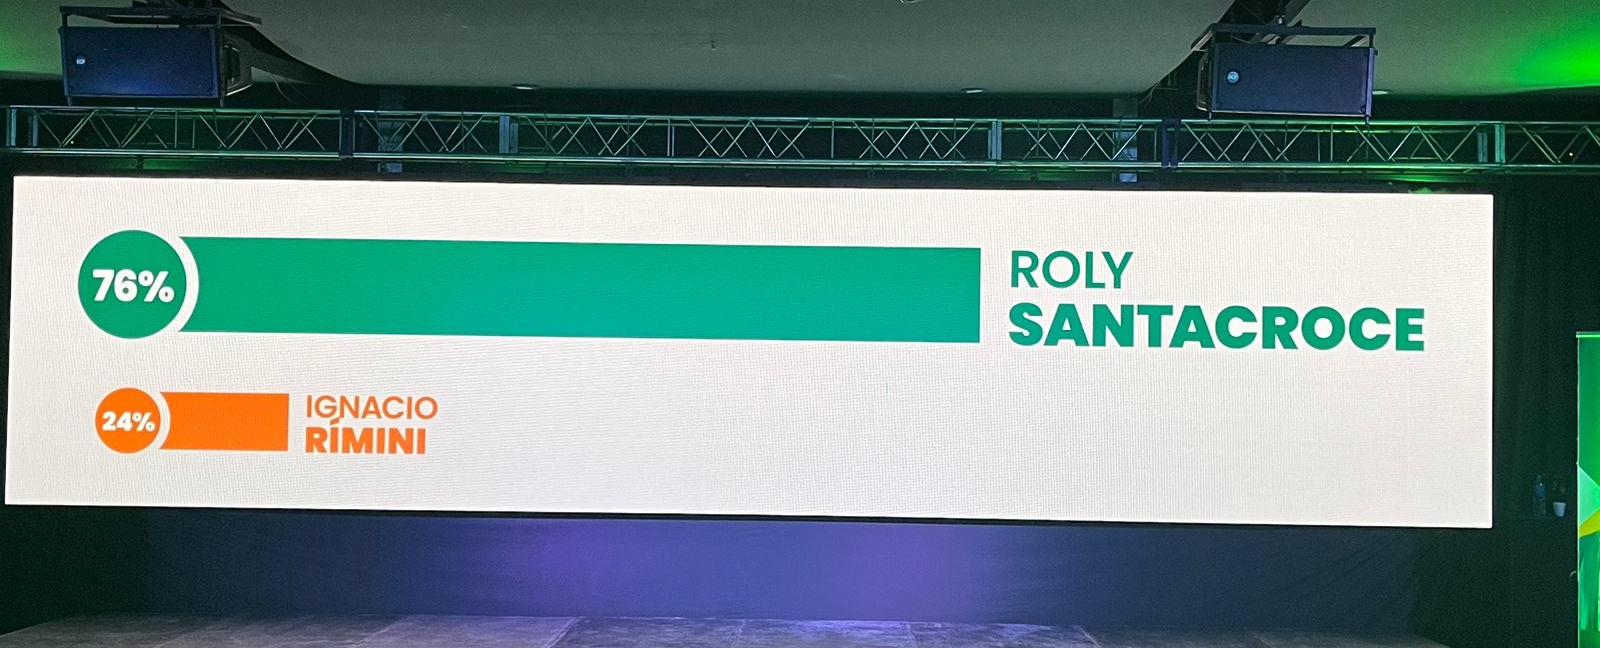 Reelección histórica: Roly Santacroce gana la intendencia de Funes por el 76%